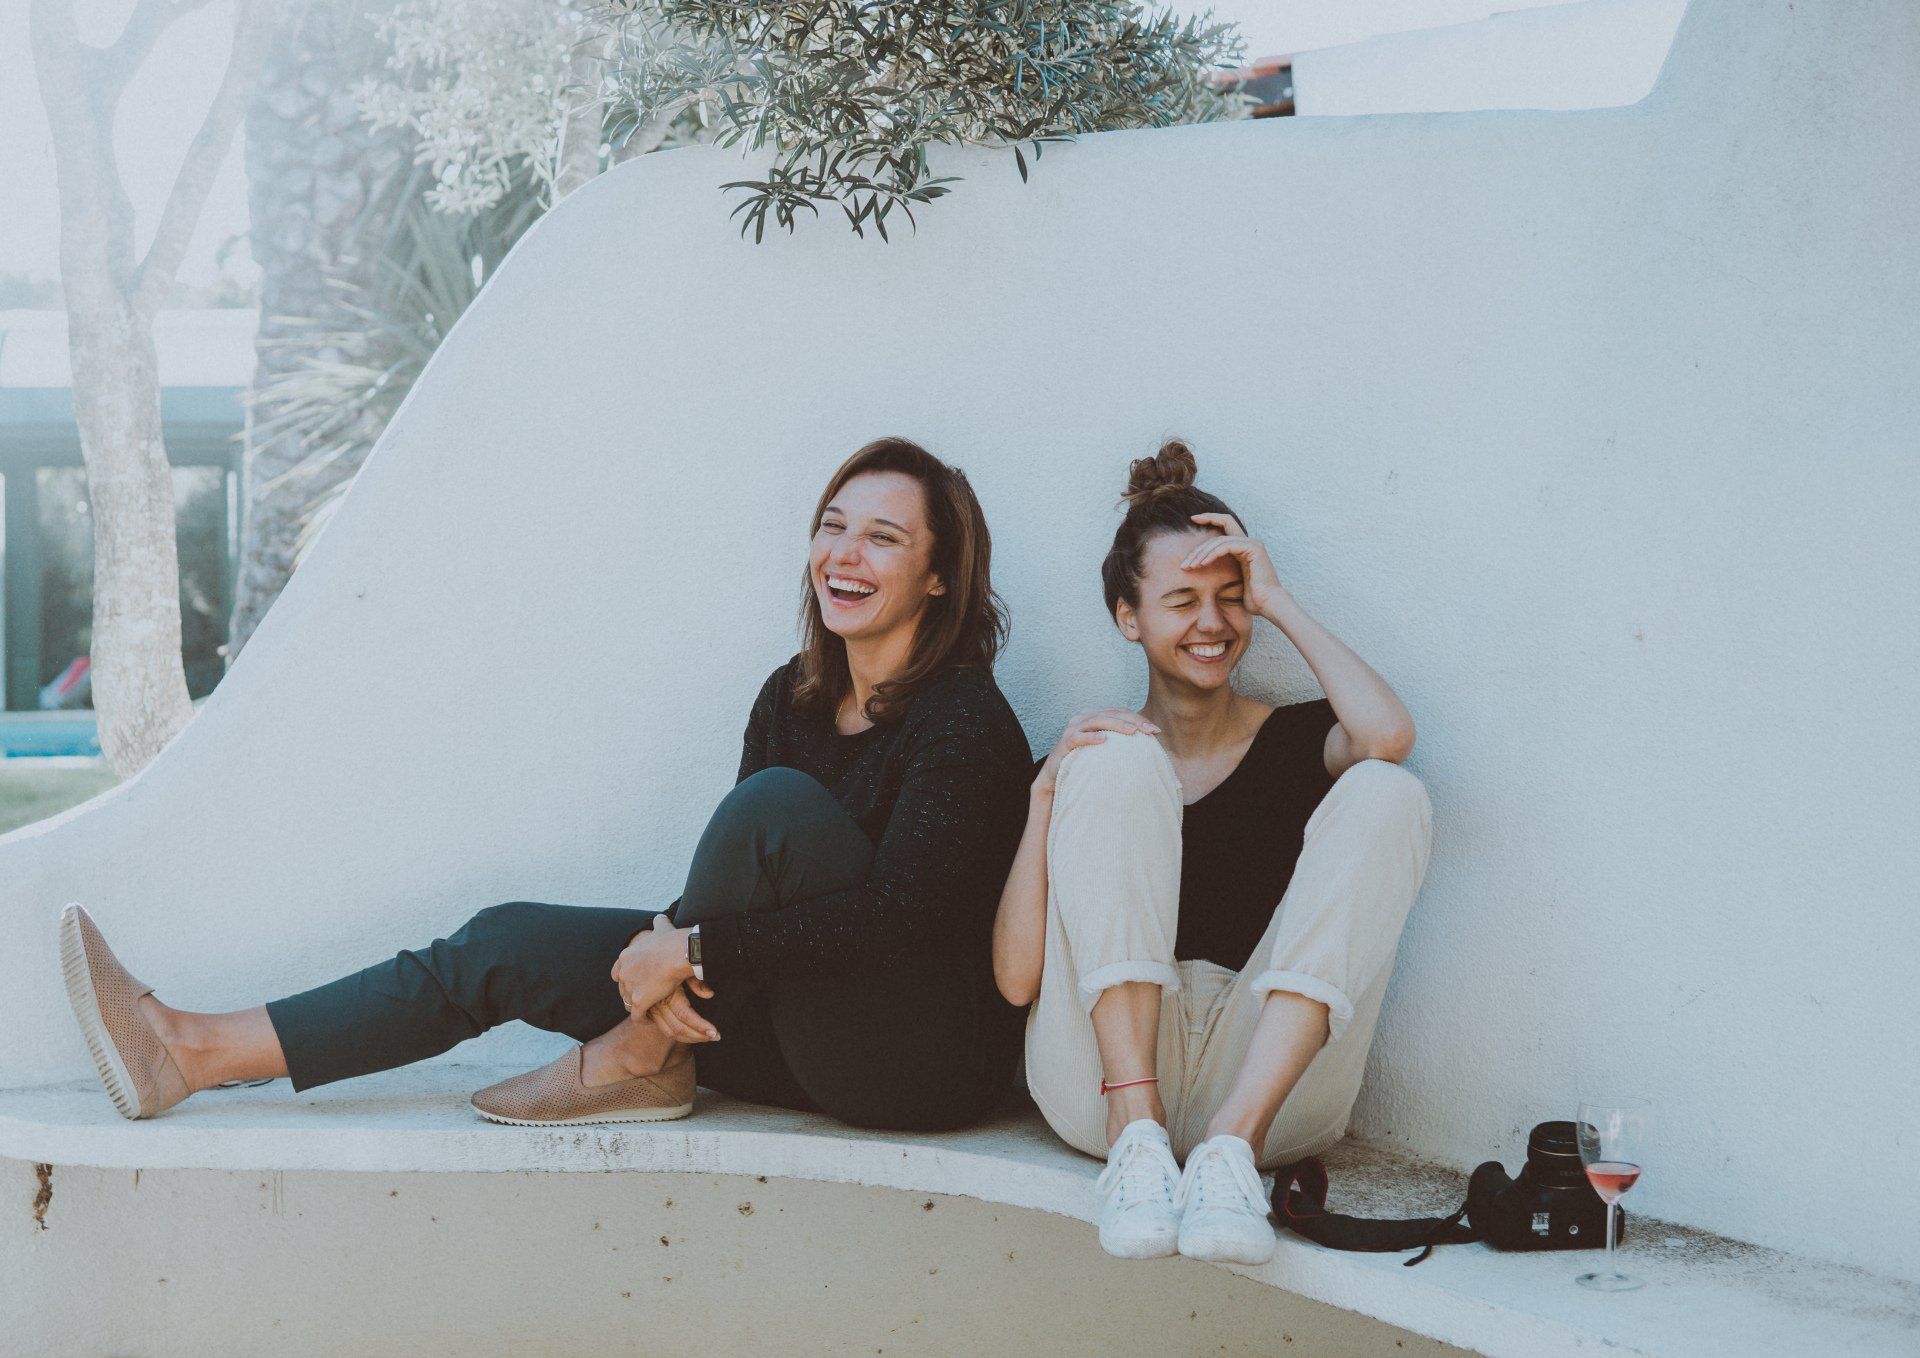 due donne sono sedute una accanto all'altra su una panchina e ridono.